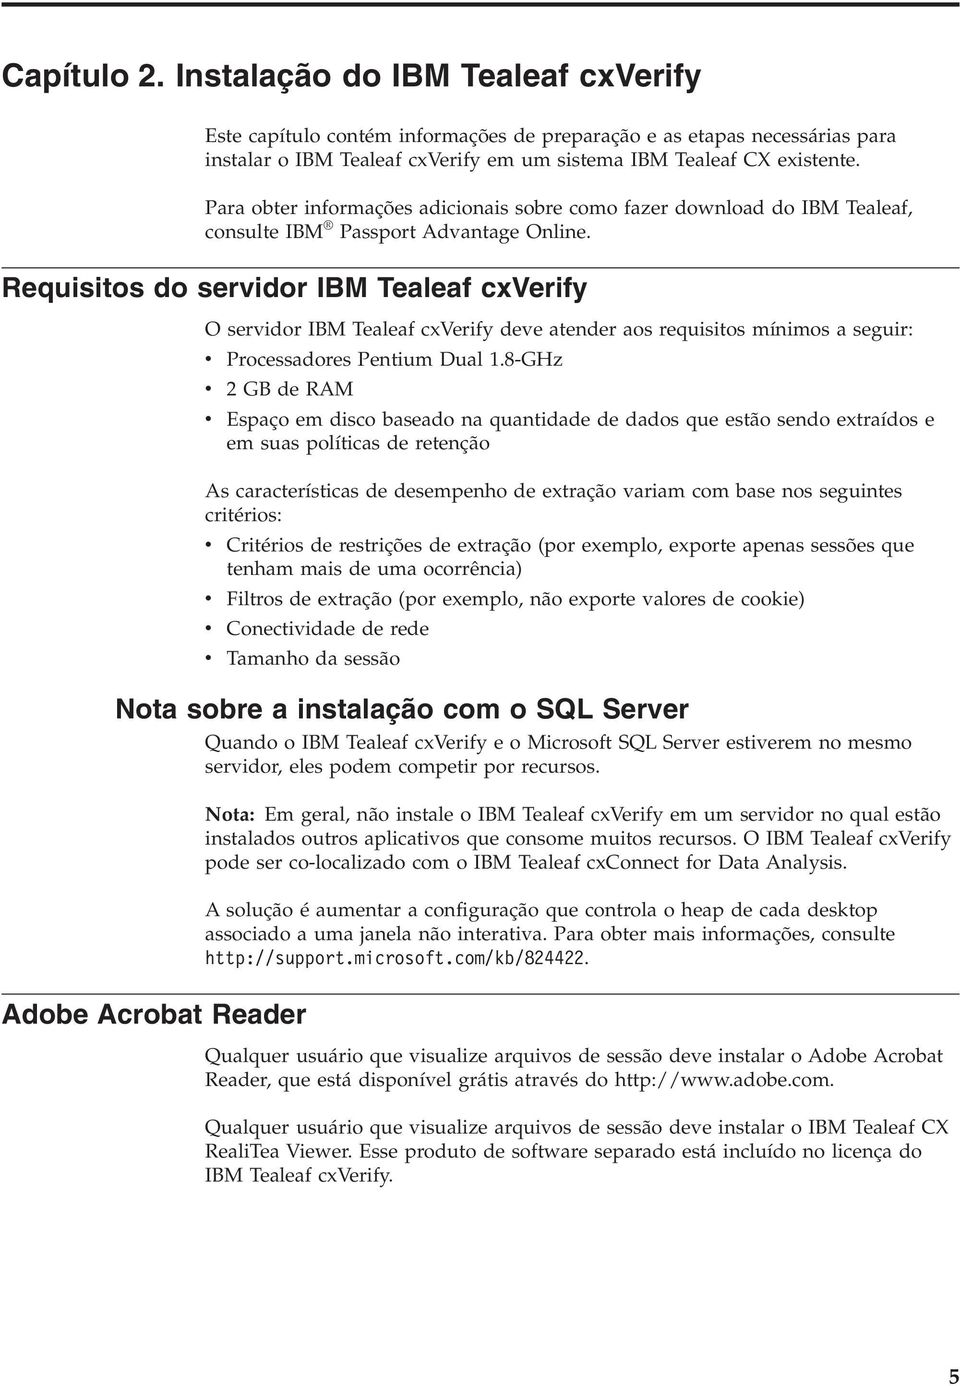 Requisitos do seridor IBM Tealeaf cxverify O seridor IBM Tealeaf cxverify dee atender aos requisitos mínimos a seguir: Processadores Pentium Dual 1.